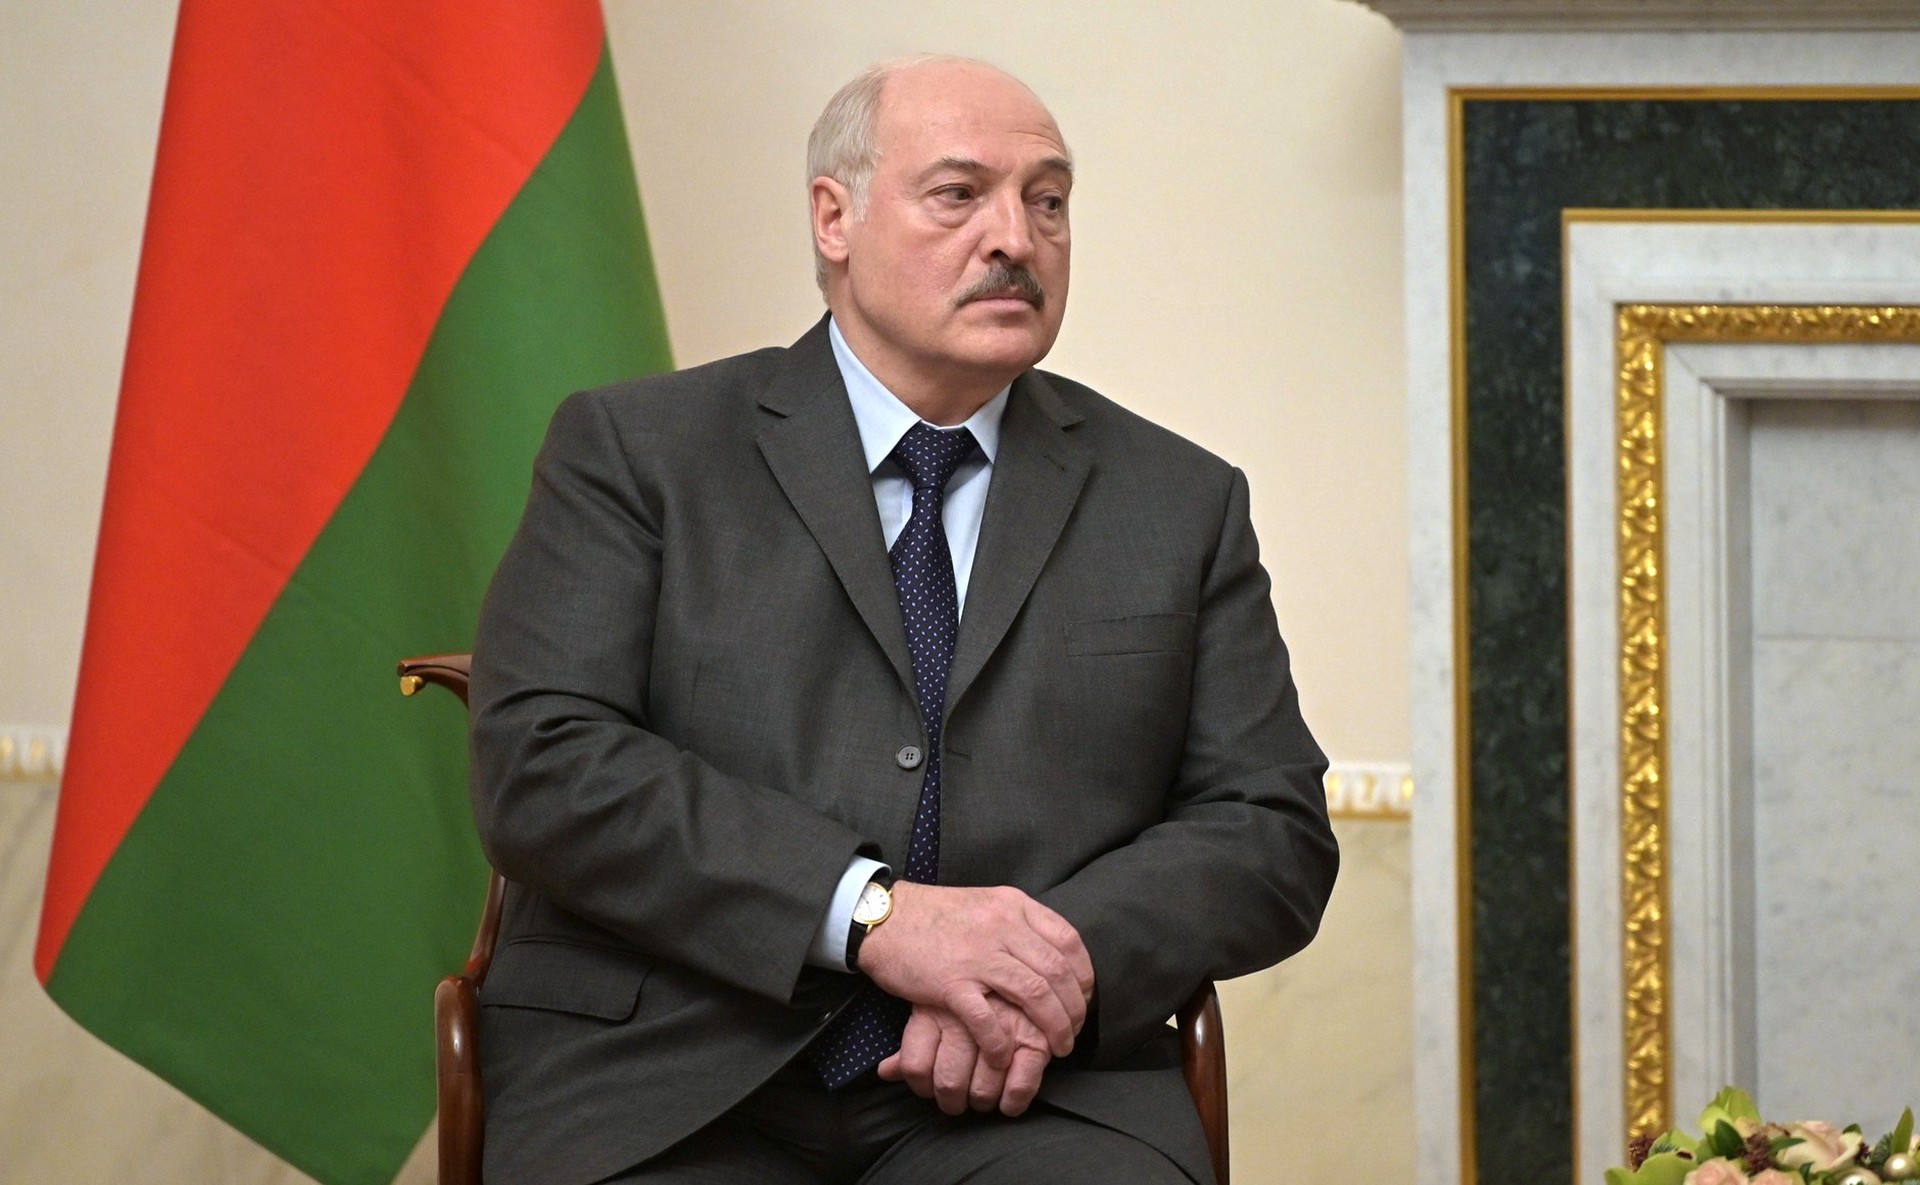 Лукашенко назвал Макрона и Шольца пиарящимся на Путине «пацаньём и мелкотой»